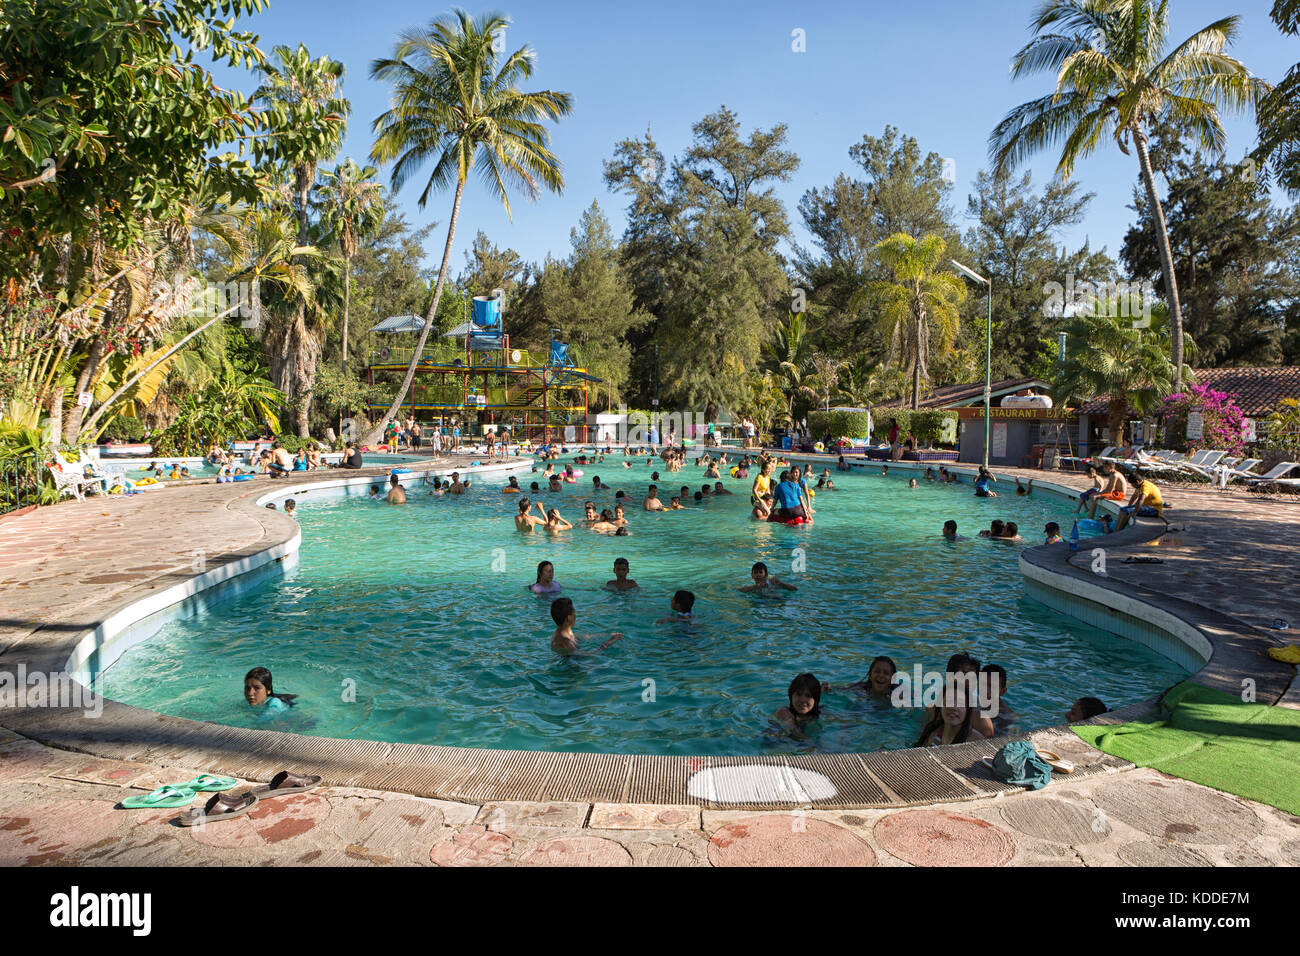 El 28 de febrero de 2014 villa corona, México: las piscinas termales de chimulco son muy populares entre los lugareños y los turistas, así como un corto trayecto en coche de Guadalajara Foto de stock